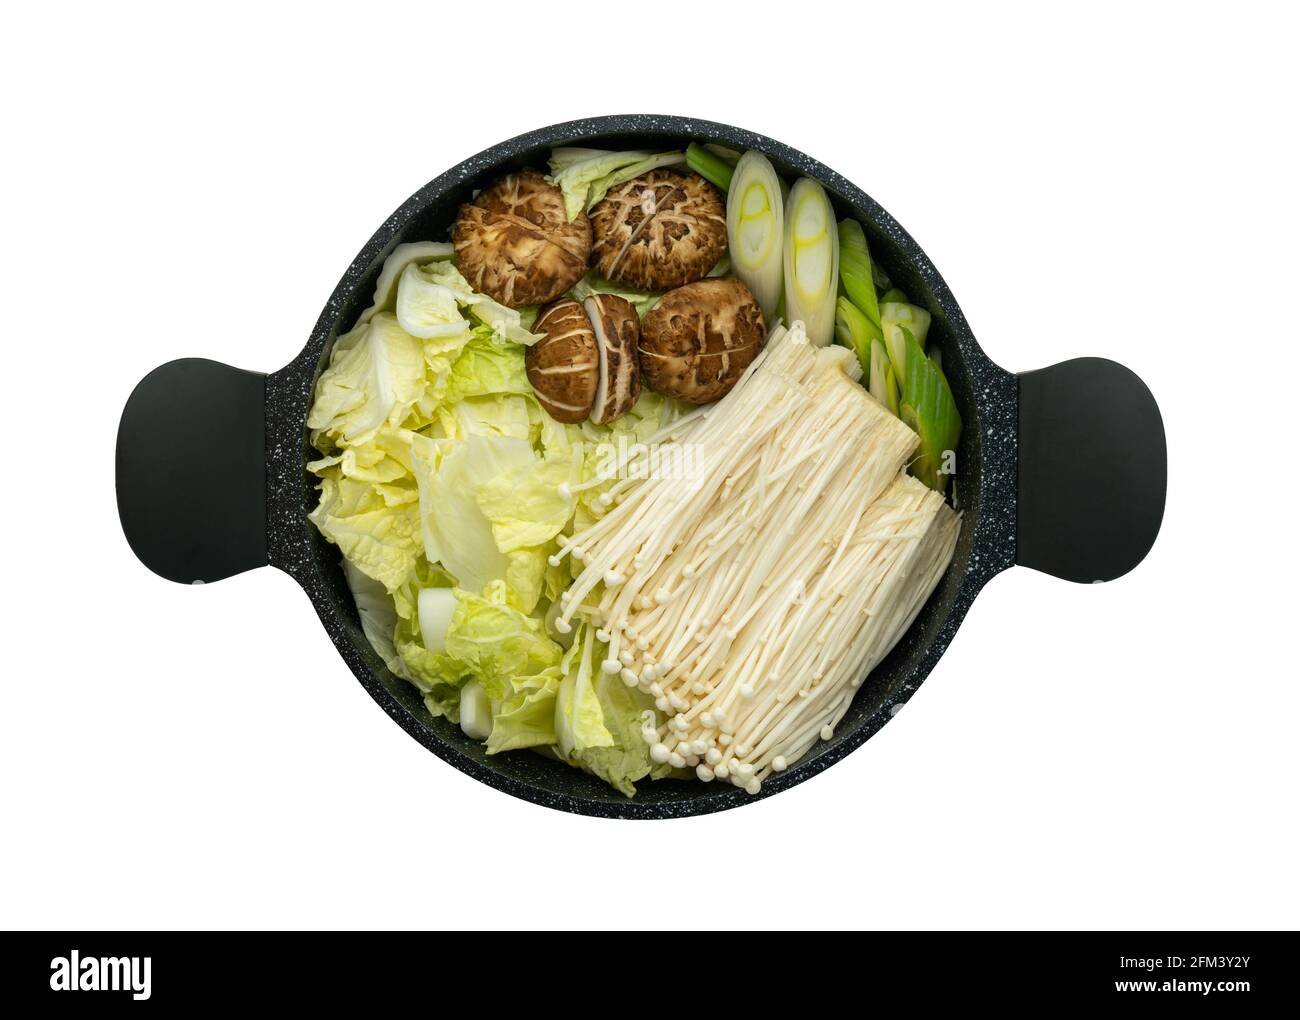 Vue isolée de dessus de divers légumes frais dans la casserole noire pour les ingrédients de la casserole chaude, repas sains repas de soupe asiatique. Banque D'Images